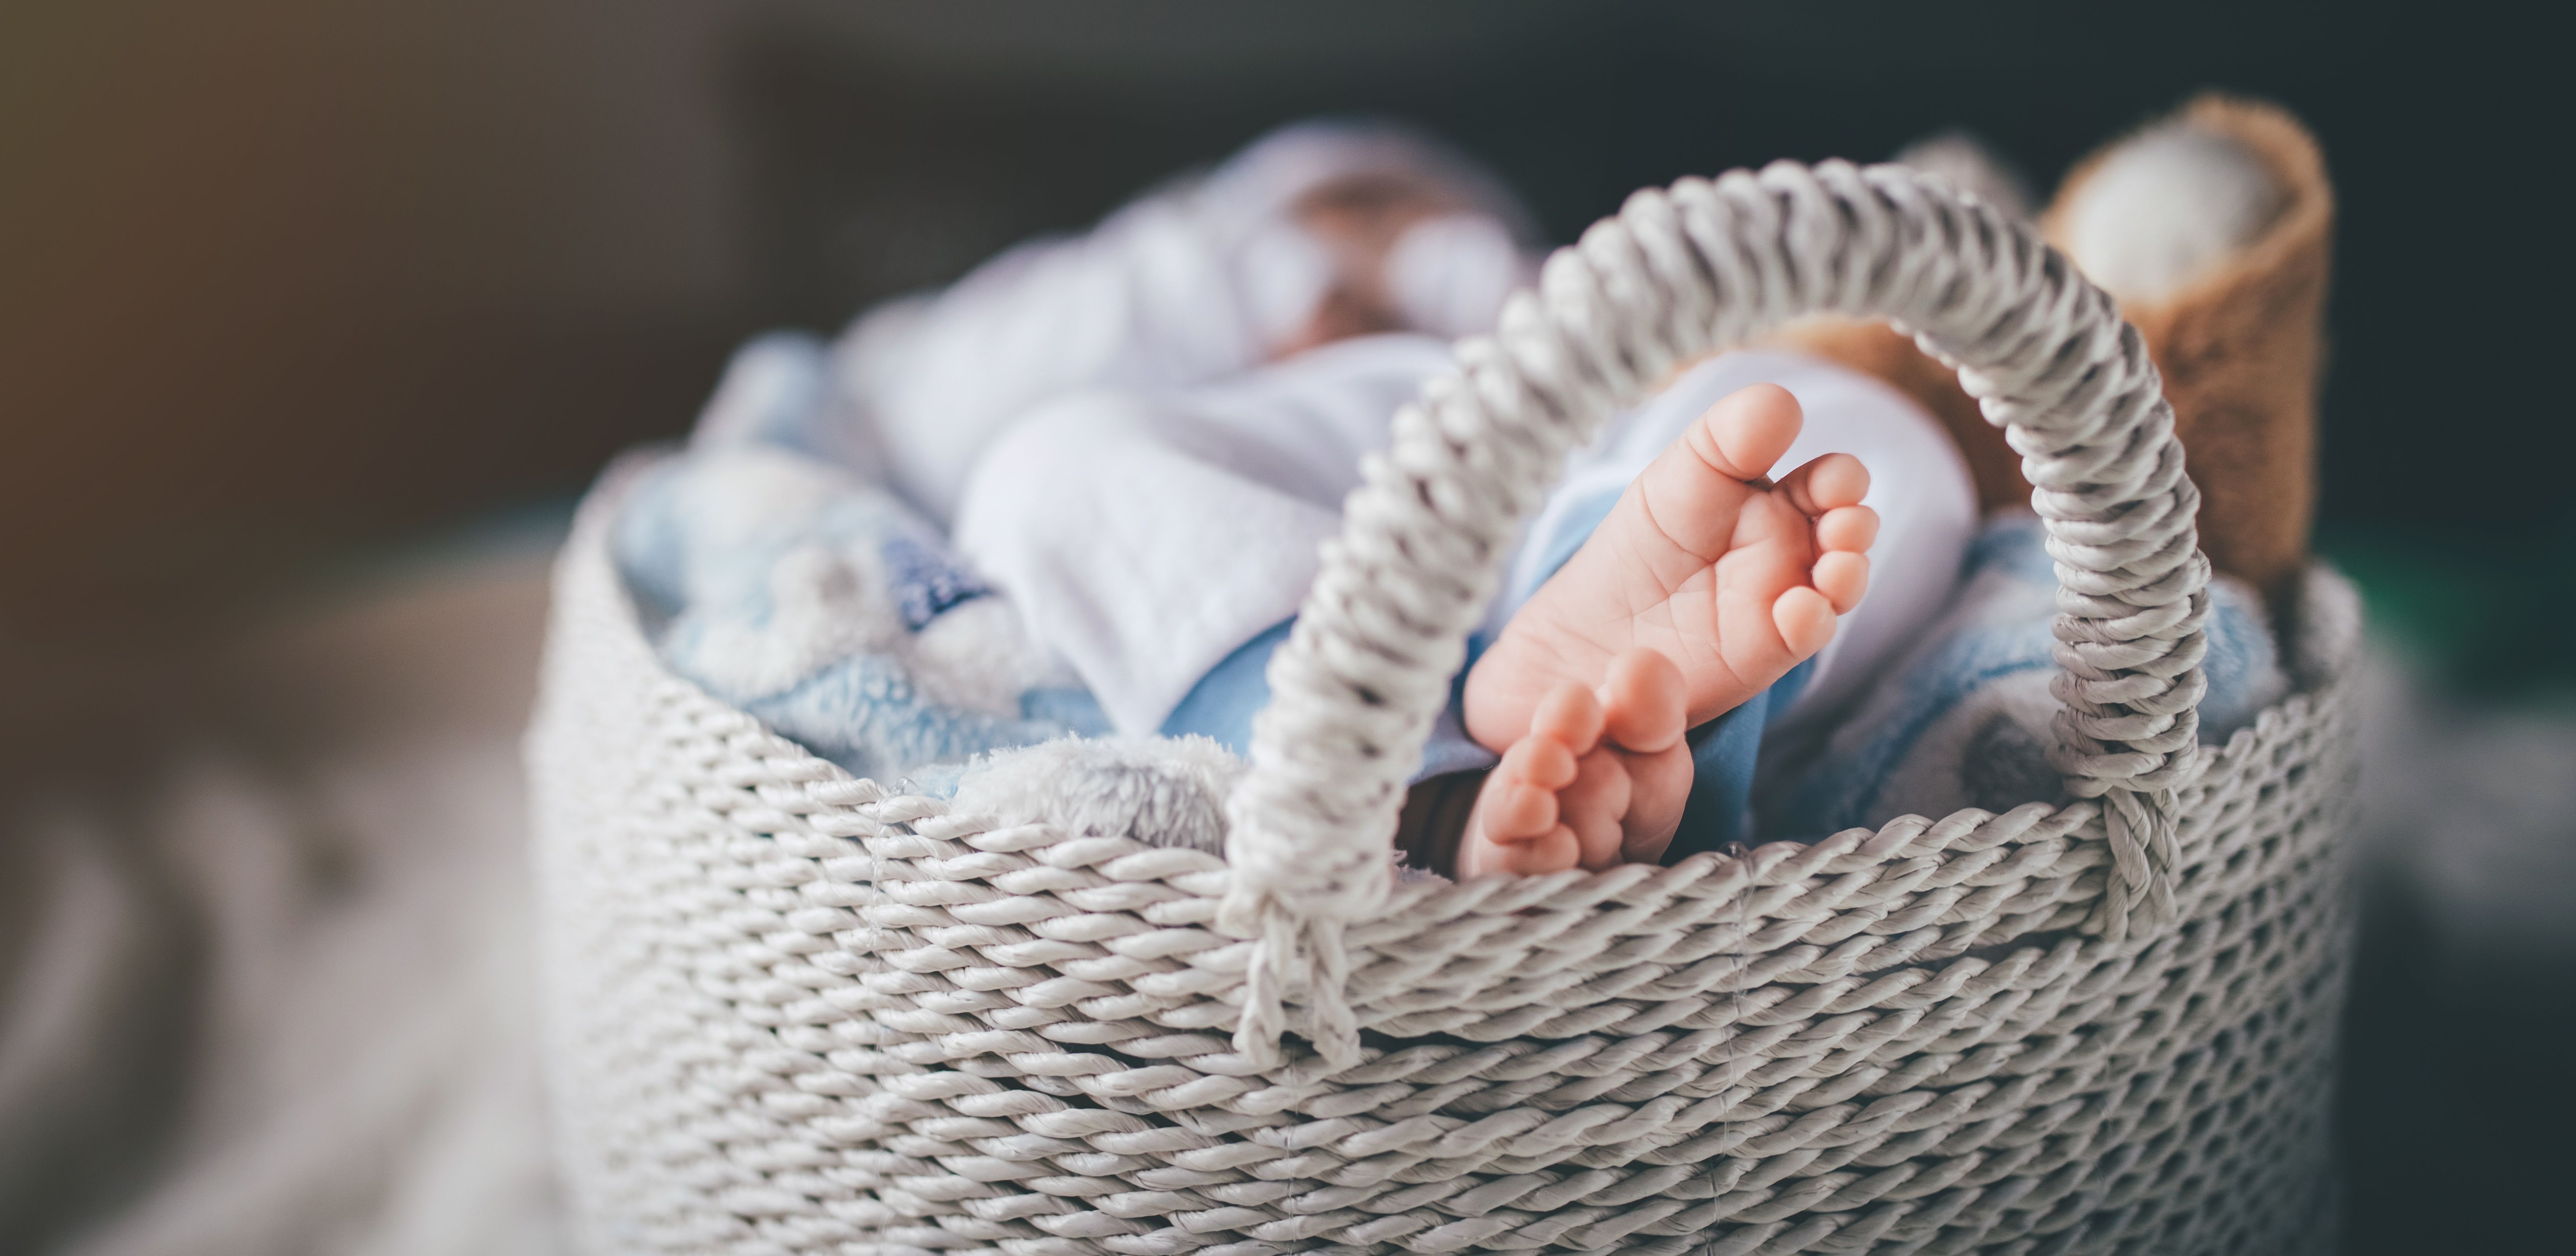 Die Füße eines neugeborenen Babys in einem Korb | Quelle: Getty Images